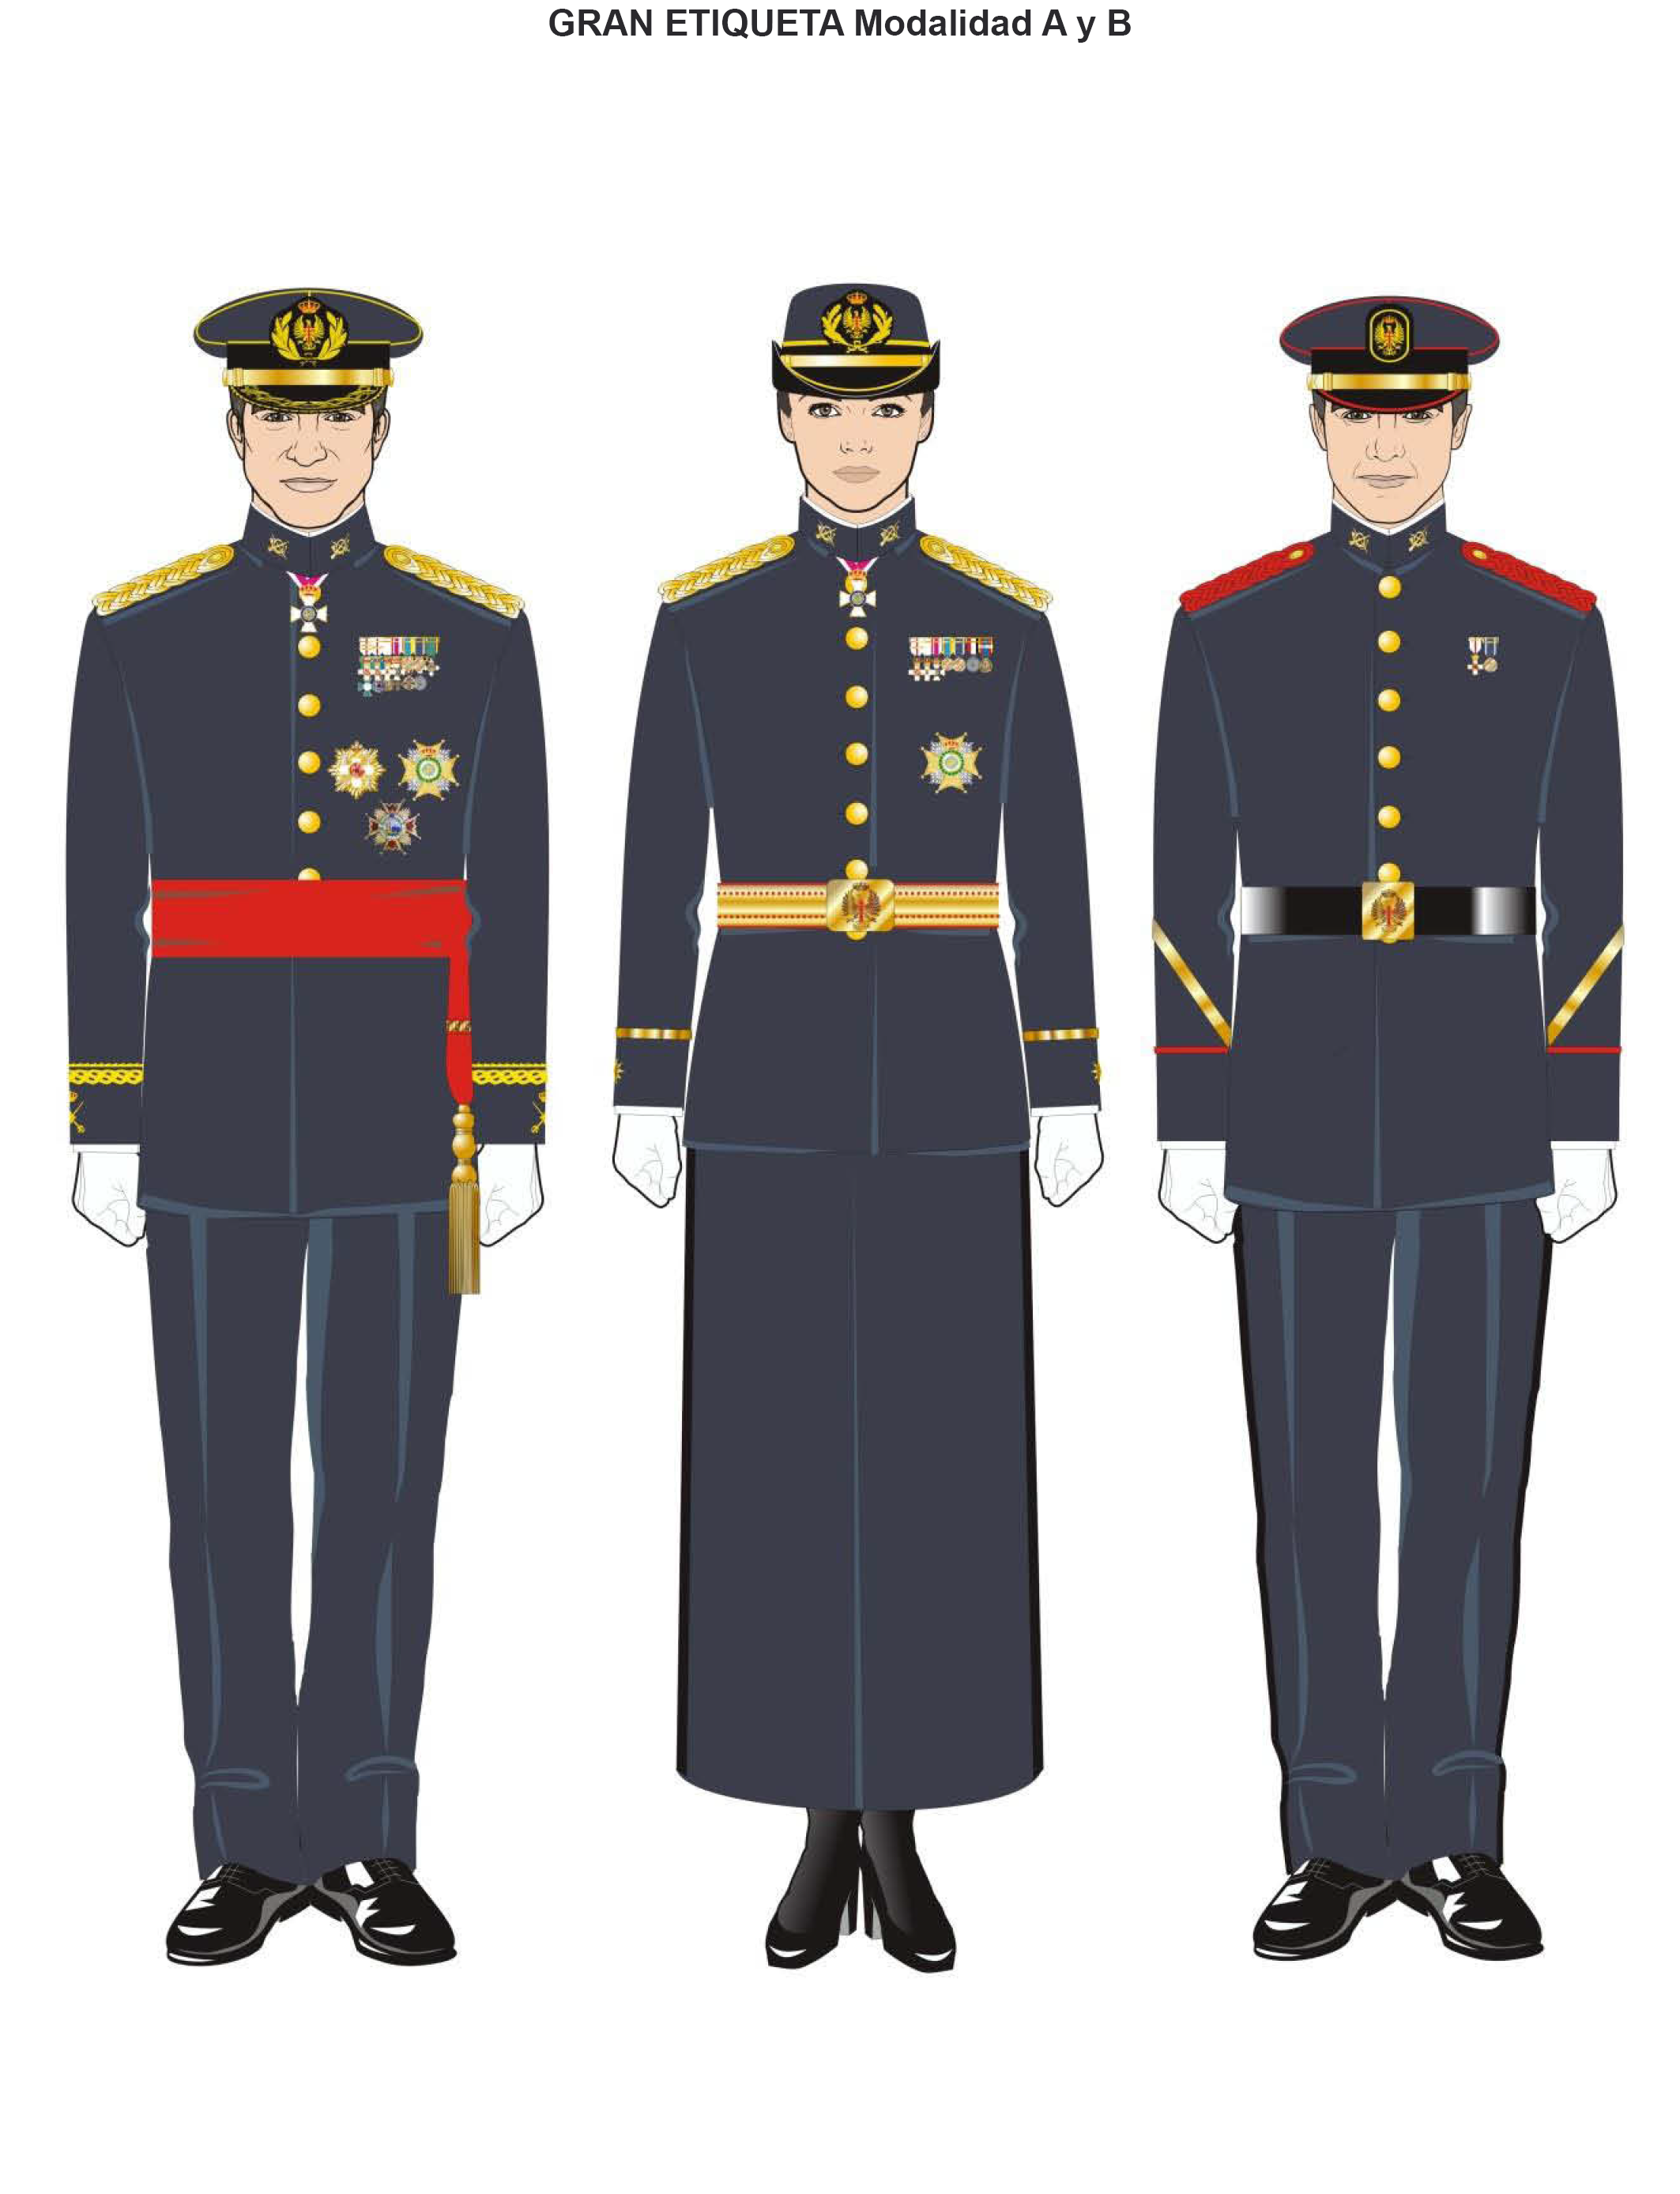 BOE-A-2016-10303 Orden DEF/1756/2016, 28 de octubre, por la que se aprueban las normas de uniformidad de las Fuerzas Armadas.